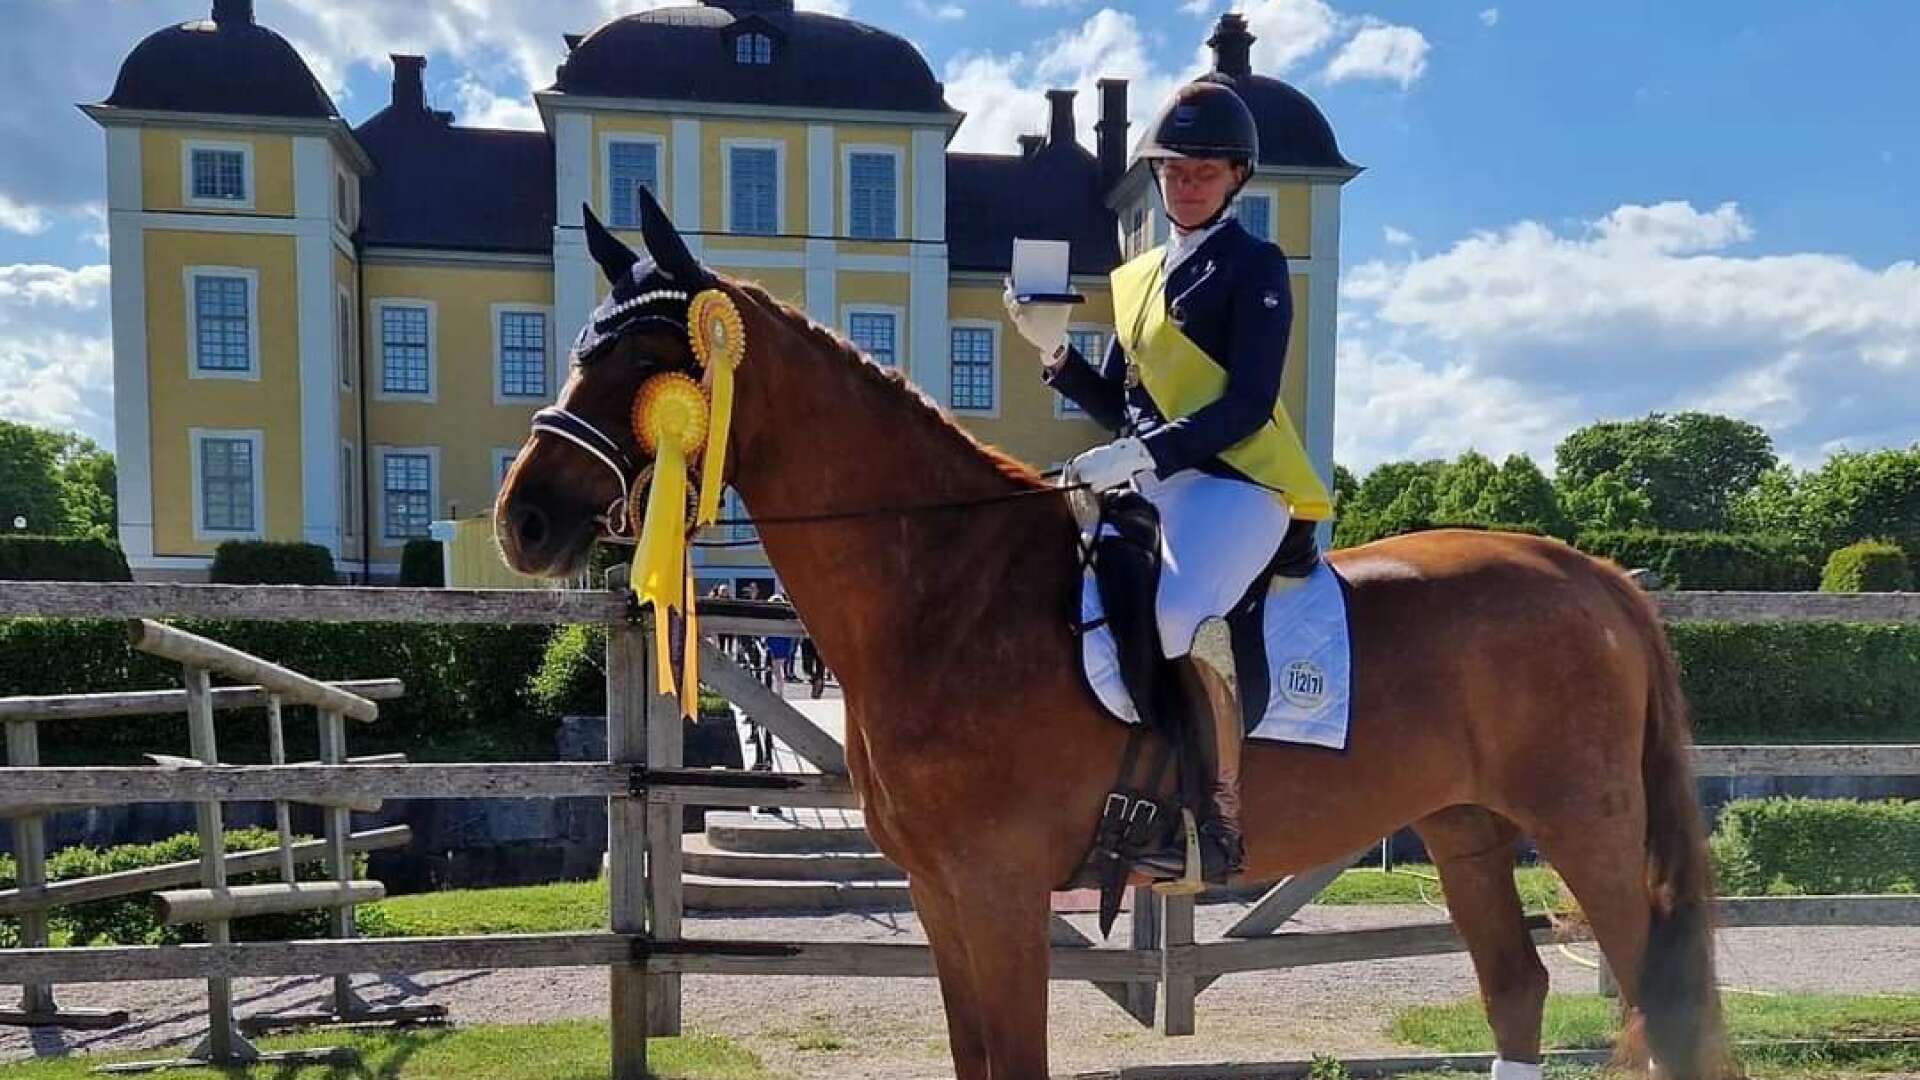 I helgen tävlar Isabelle Fredholm och hästen Ruviera på distriktmästerskapet i paradressyr, tidigare i år tog de hem SM-medalj tillsammans. 